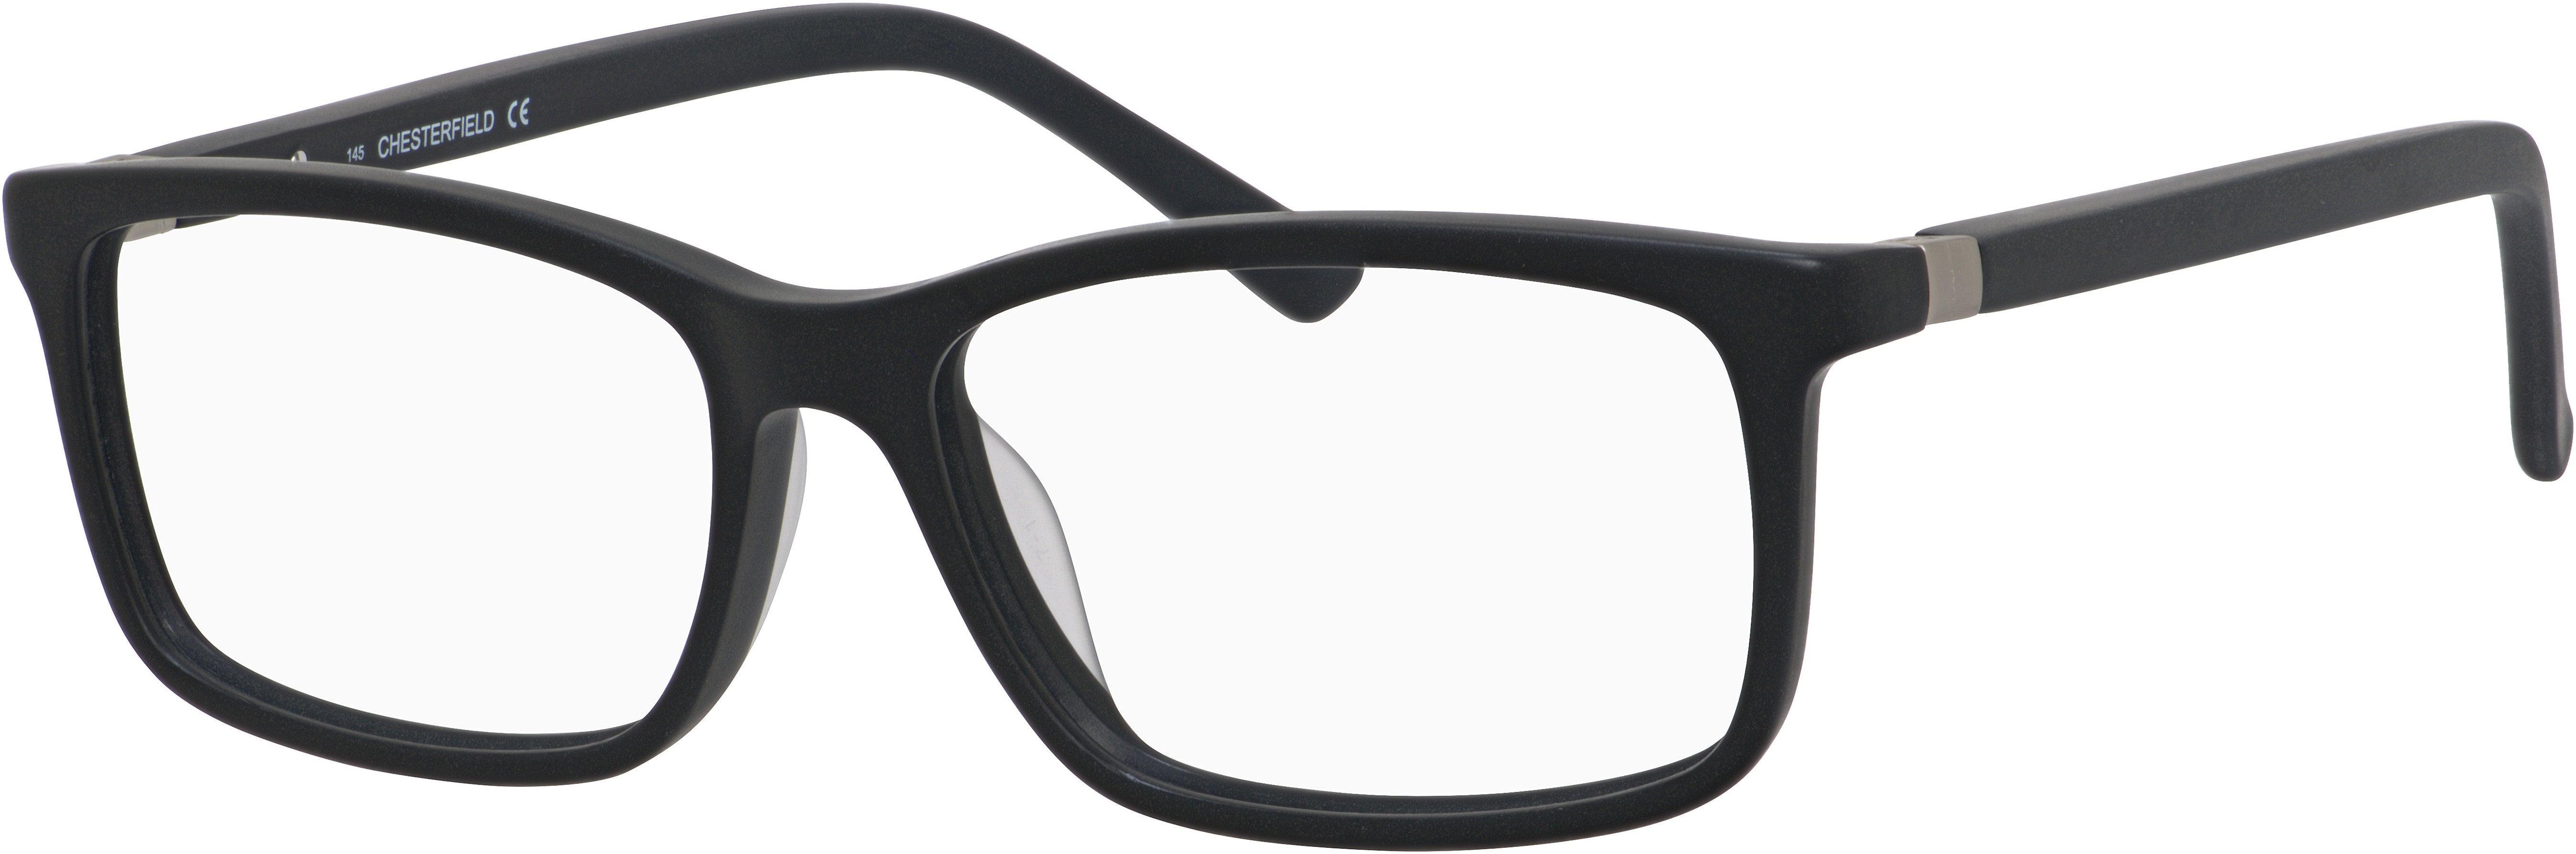  Chesterfield 51/XL Rectangular Eyeglasses 0807-0807  Black (00 Demo Lens)